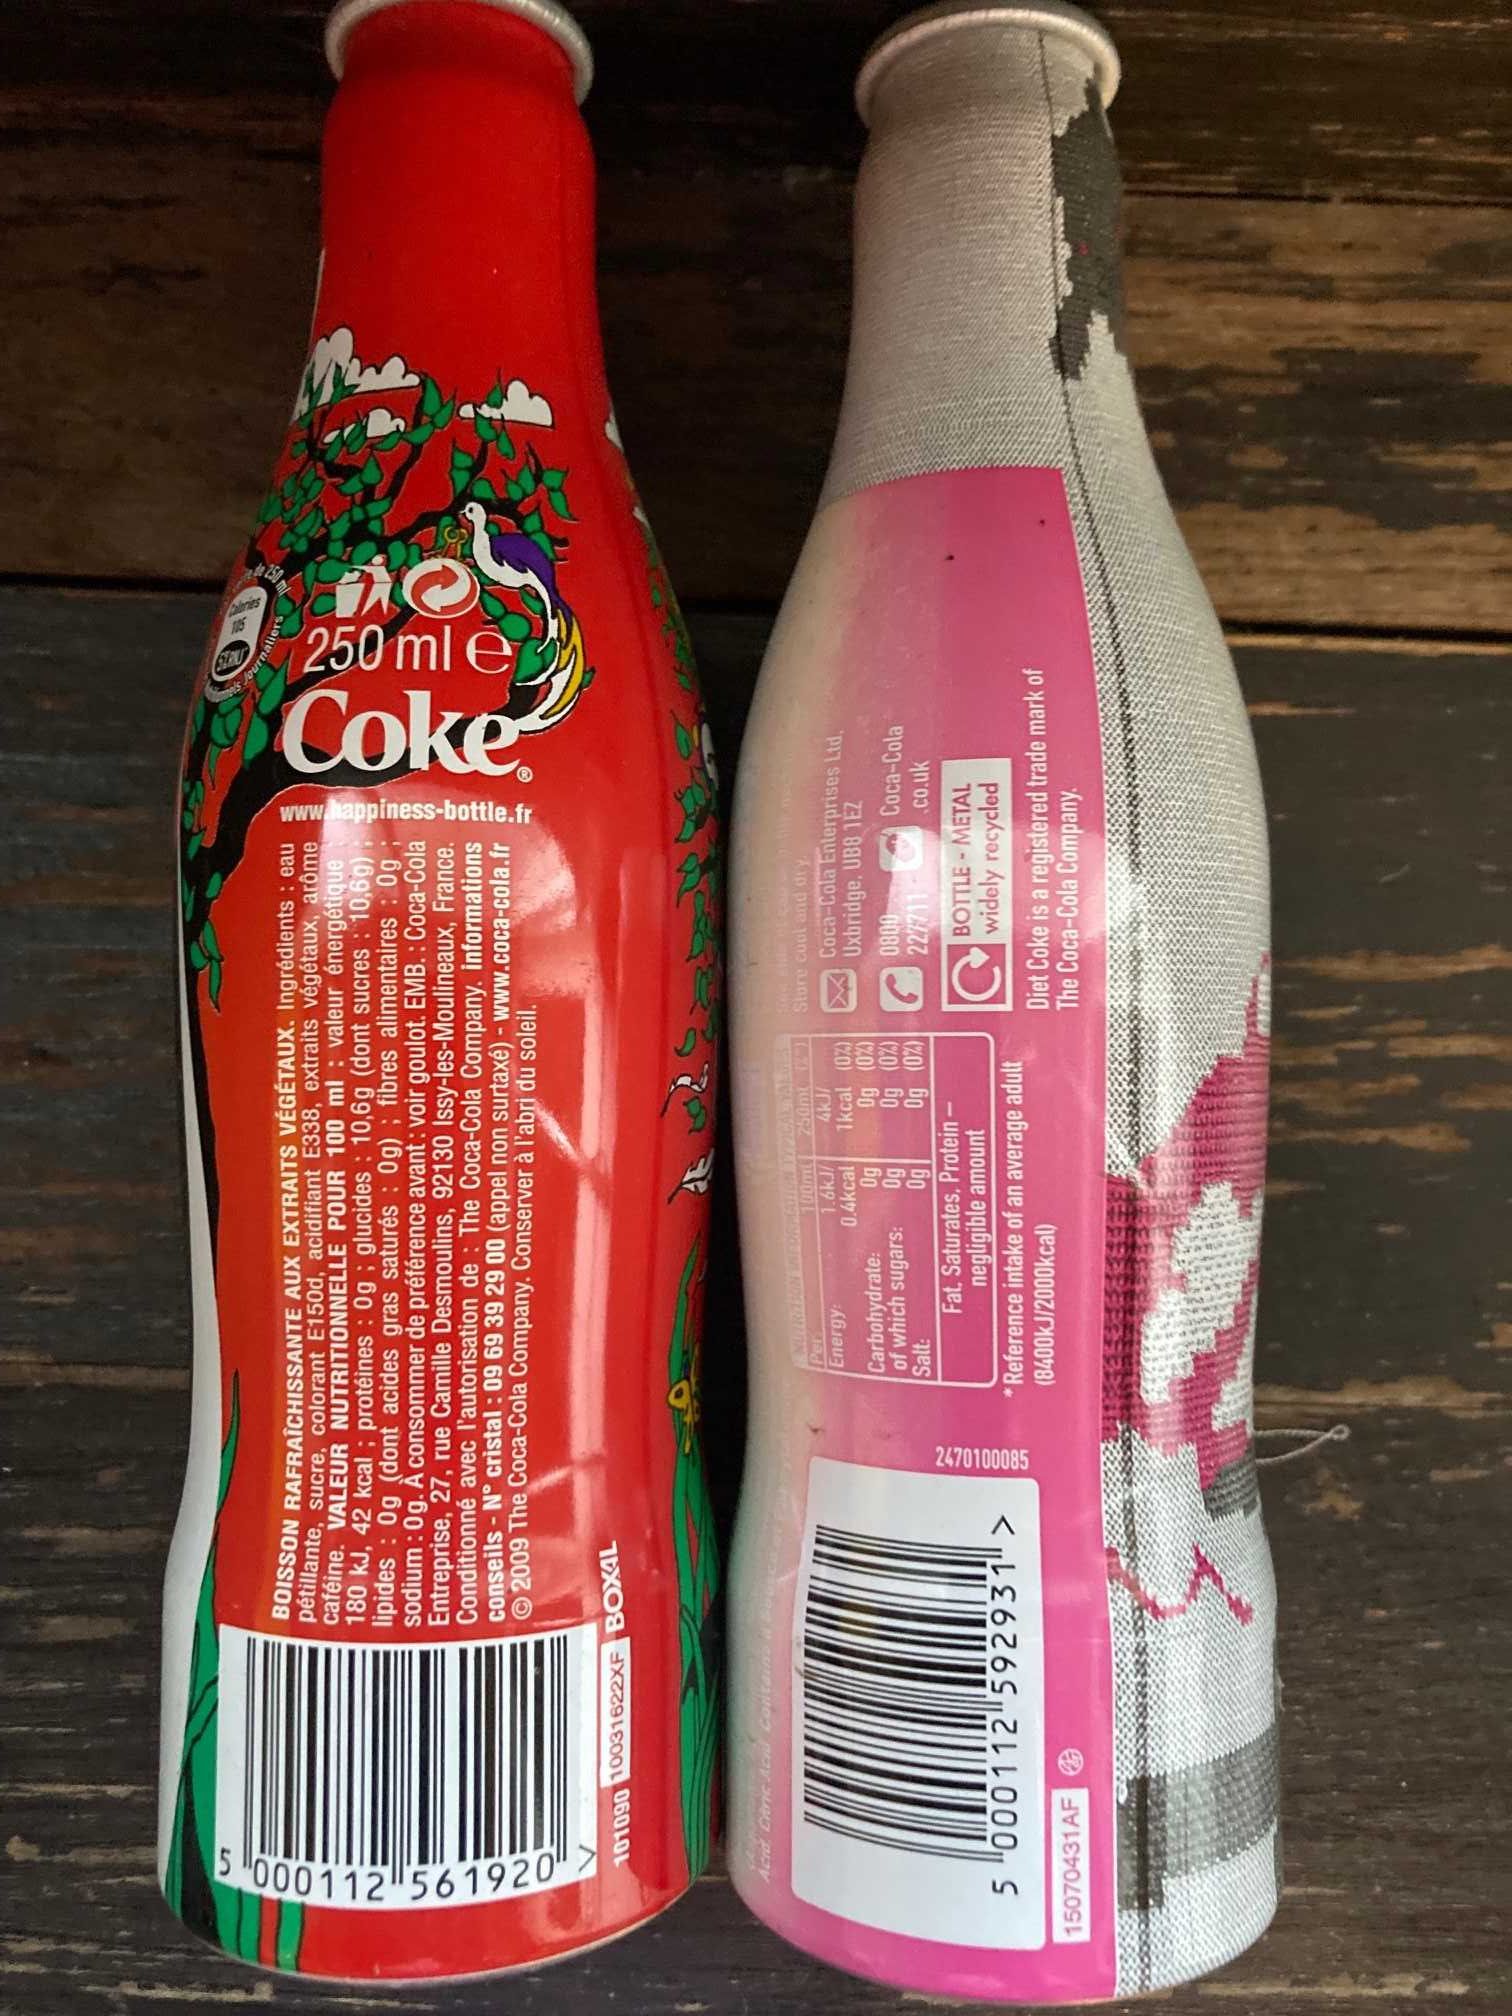 2 Garrafas de coca cola - edição limitada